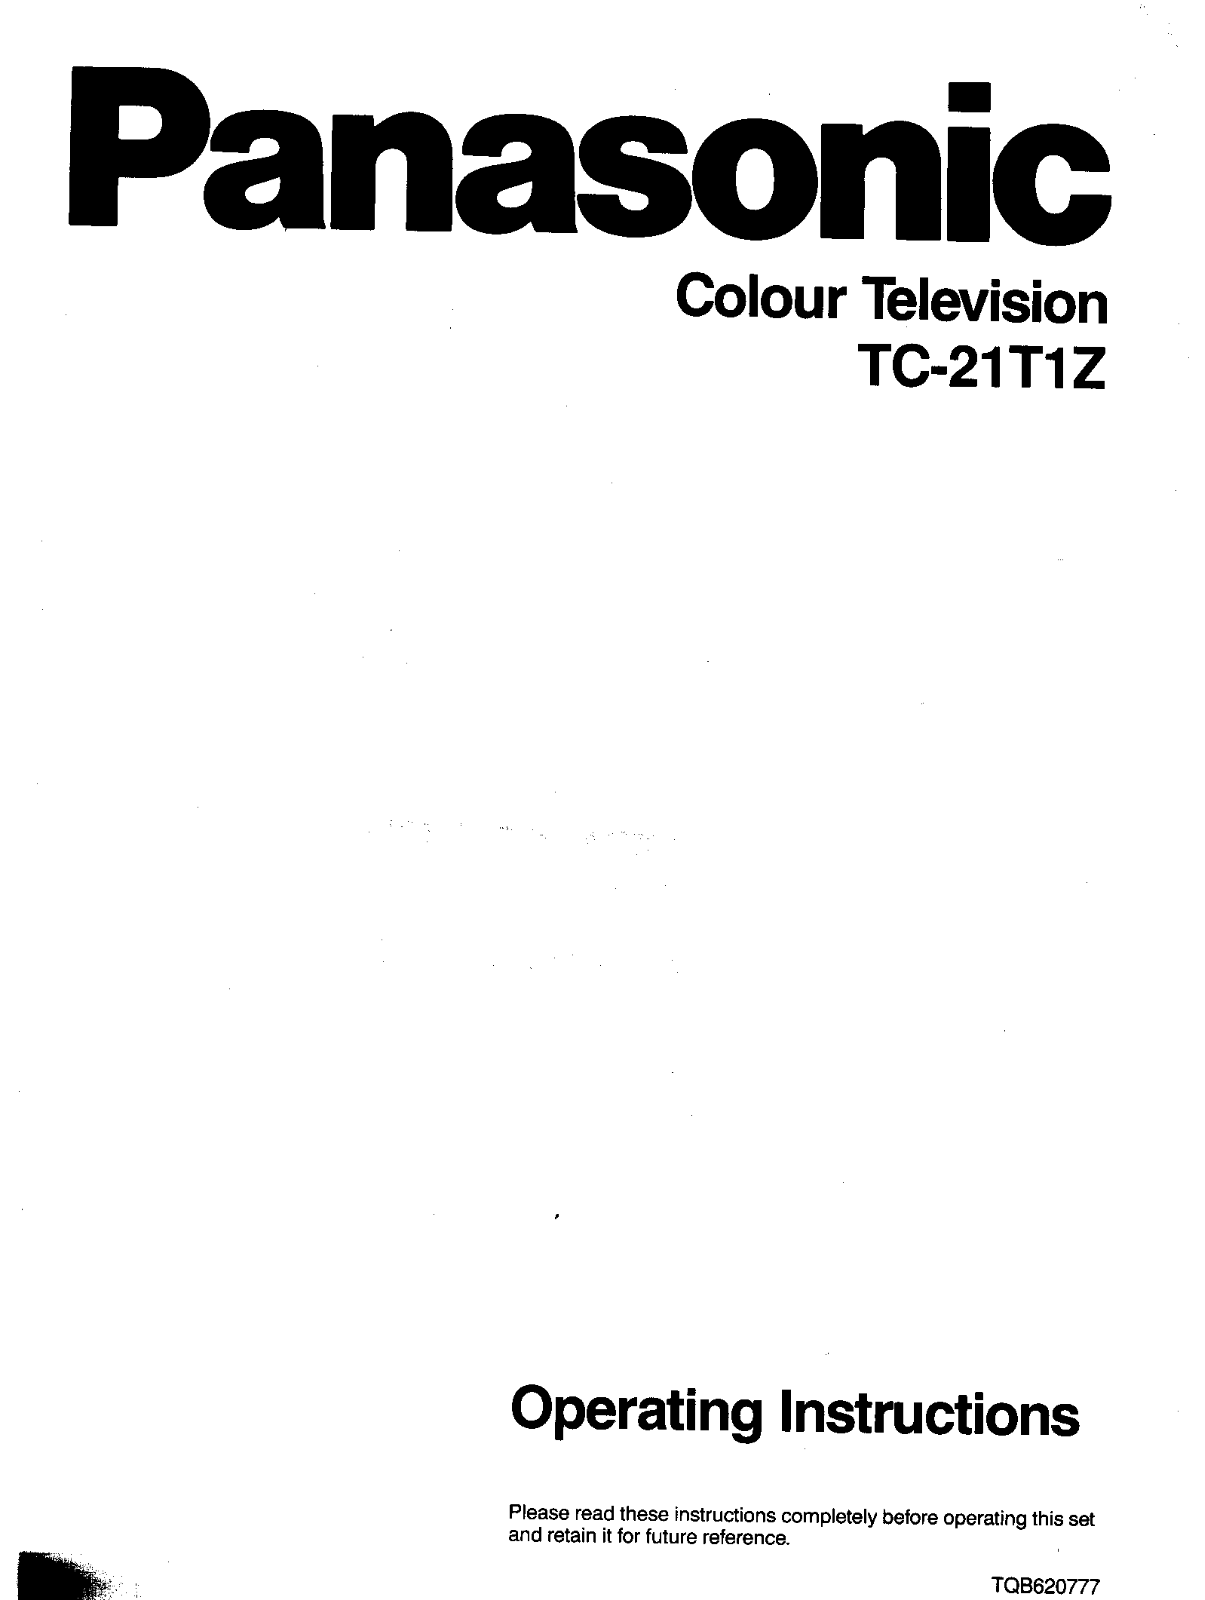 Panasonic TC-21T1Z User Manual